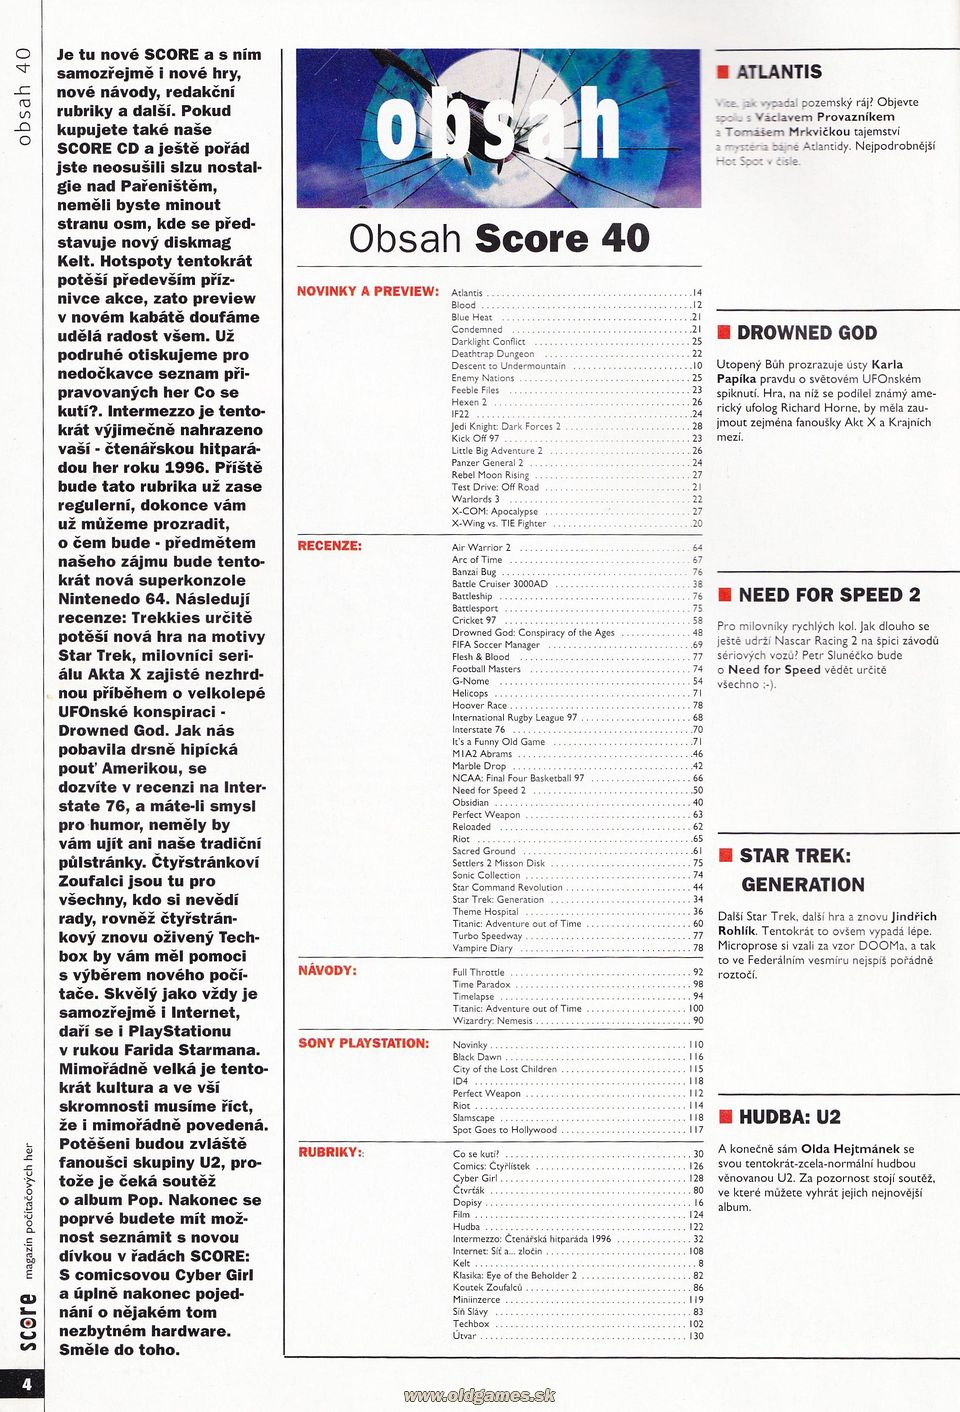 Obsah Score 40